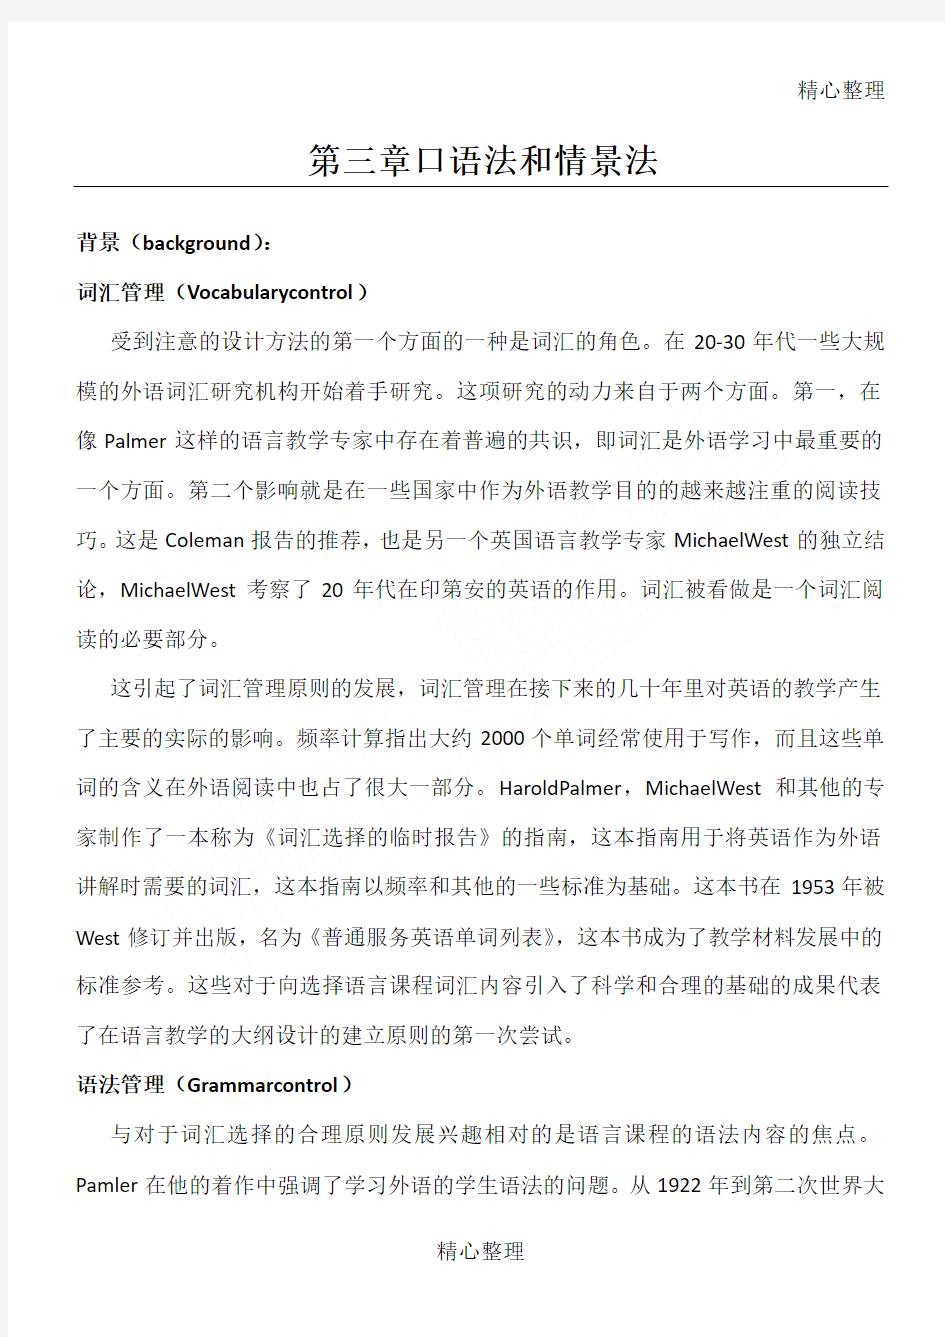 外语教学流派中文翻译打印版